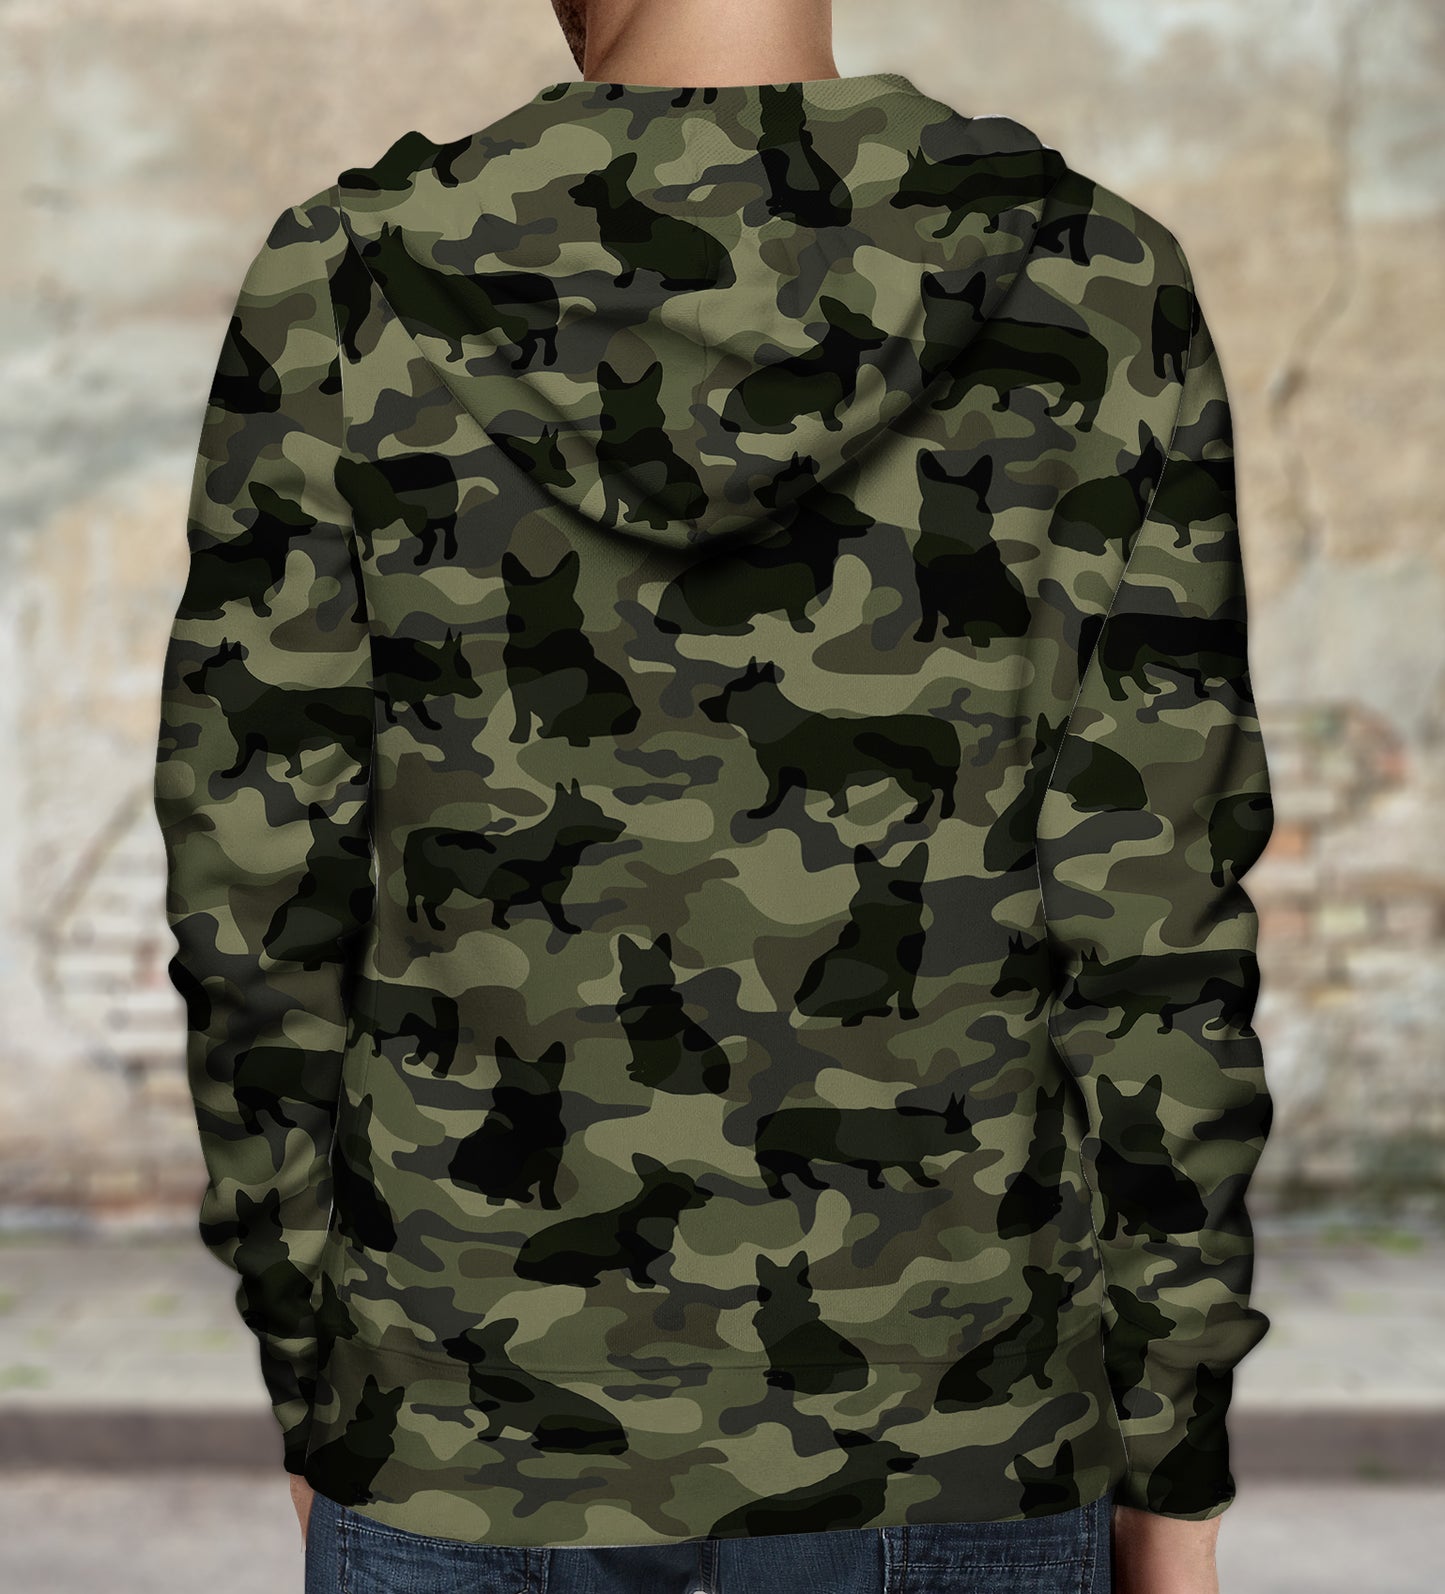 Style de rue avec sweat à capuche camouflage Welsh Corgi V1